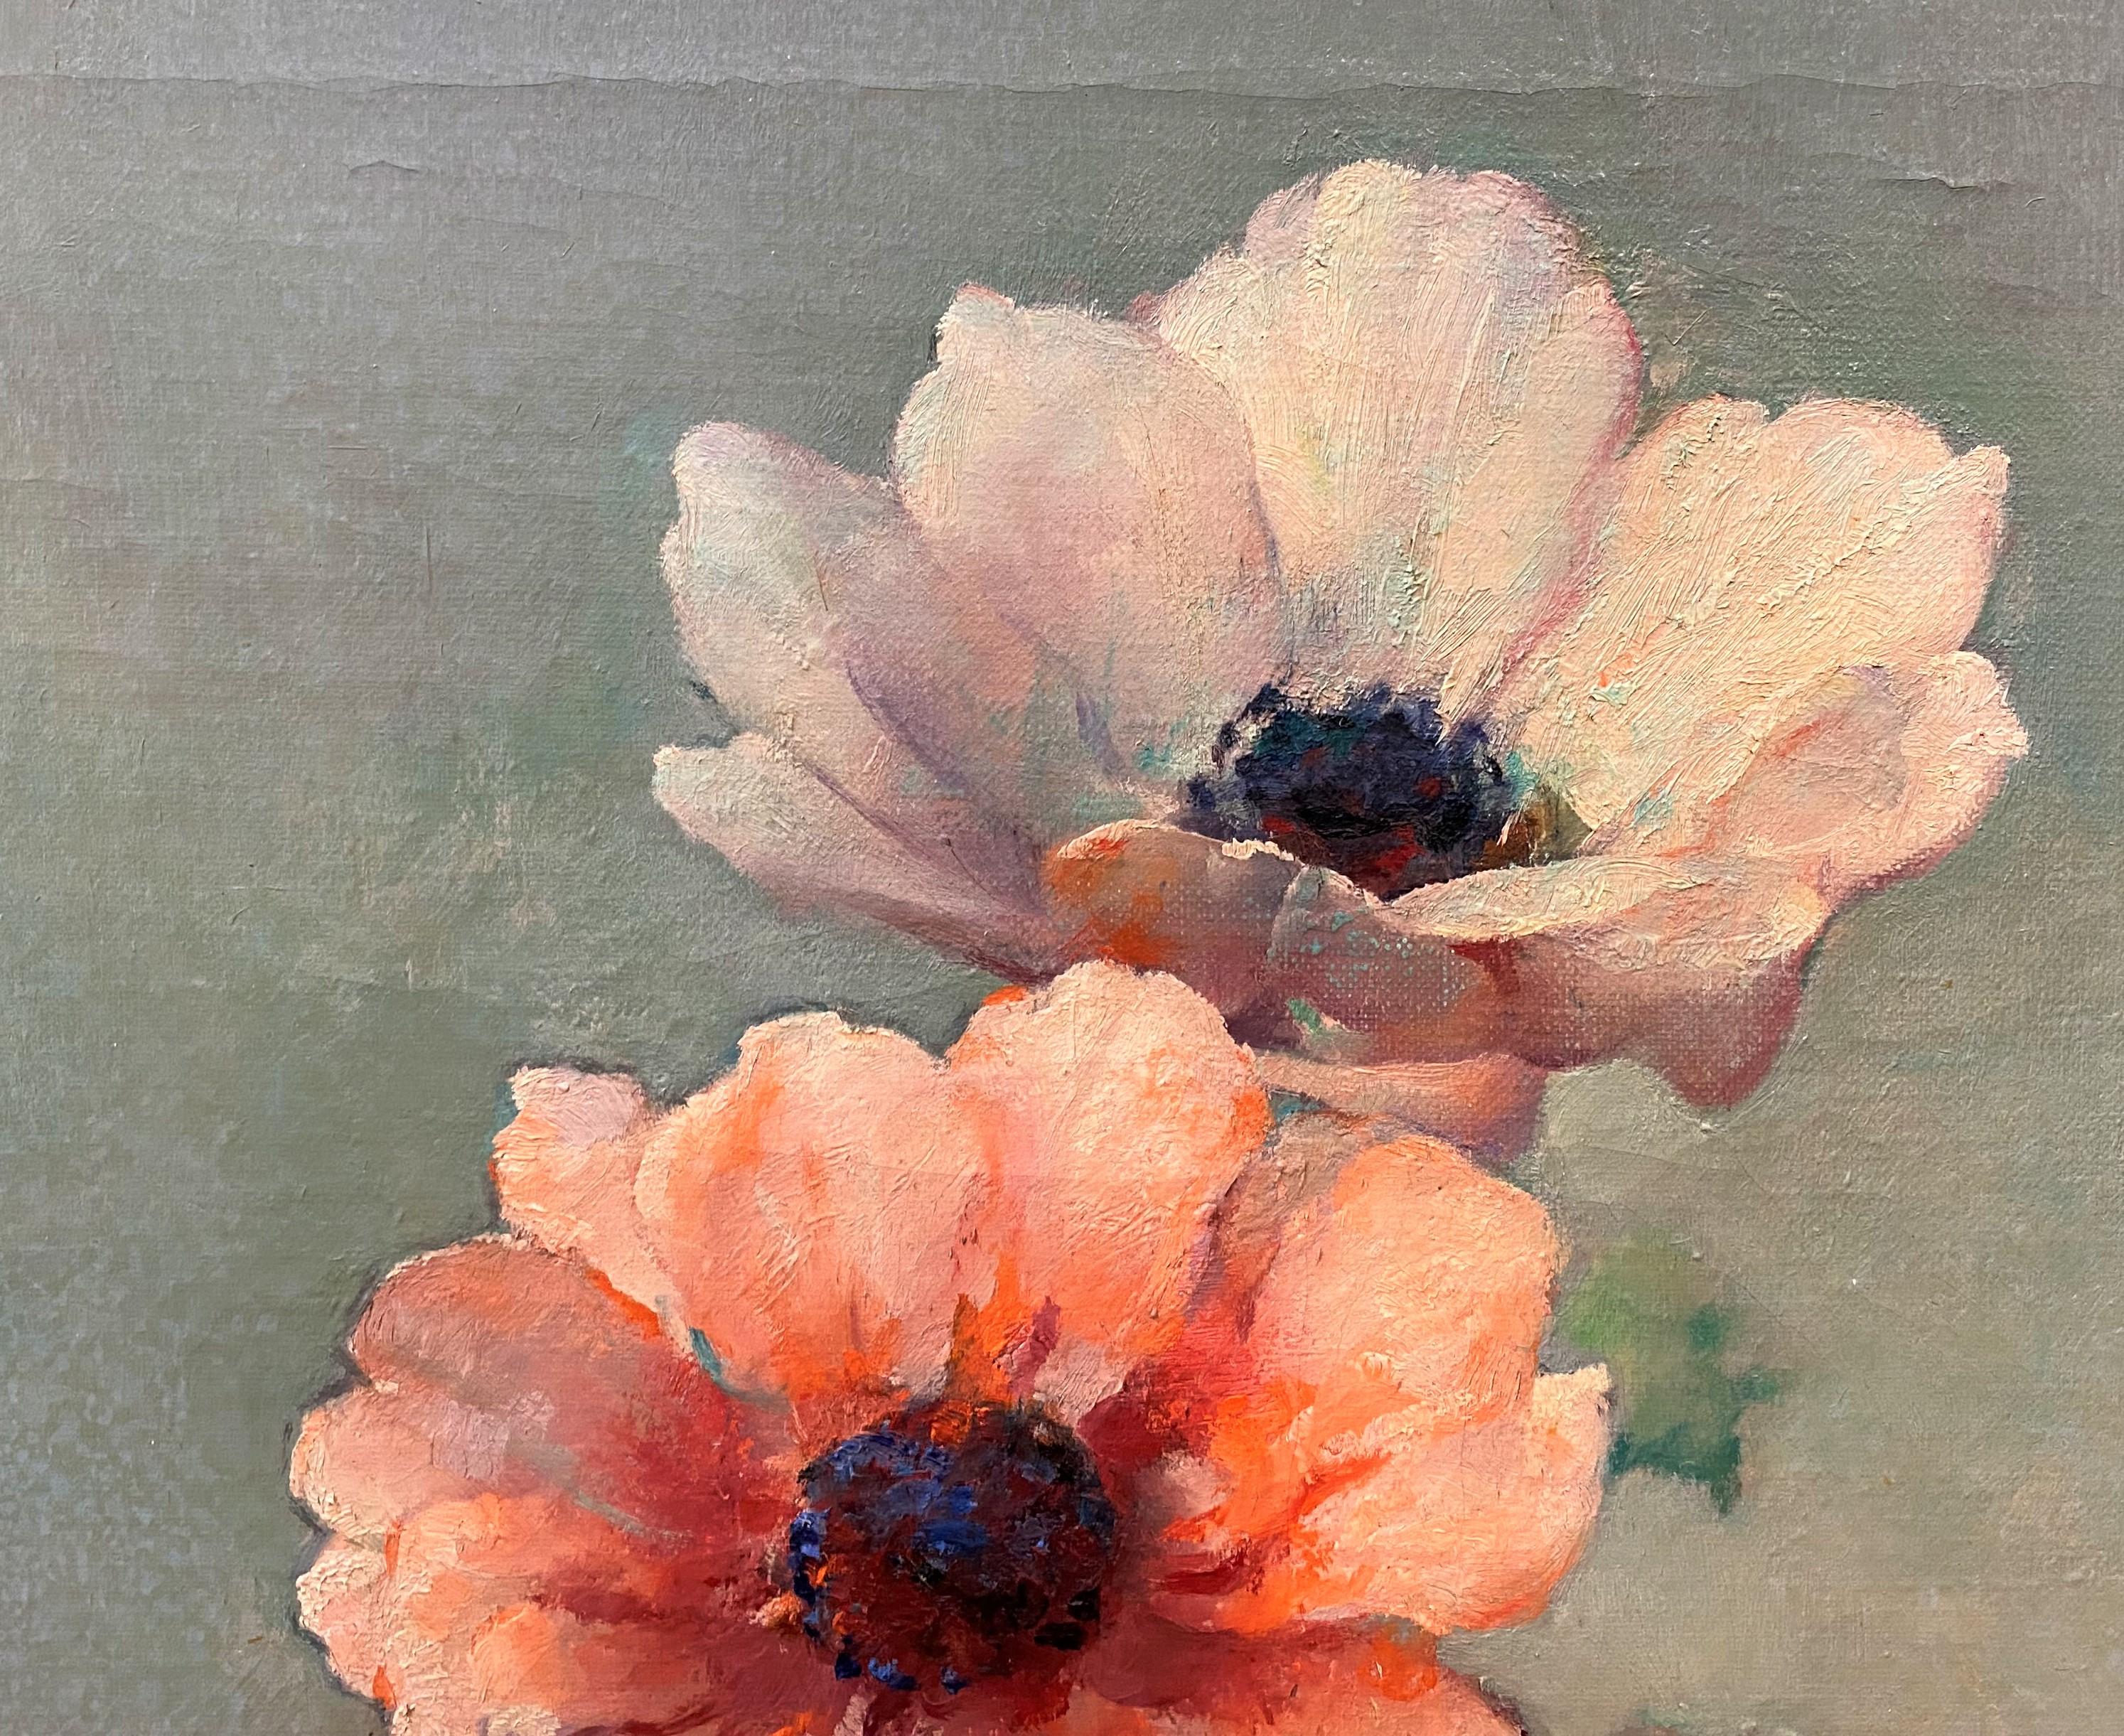 Dieses wunderbare Blumenstillleben wurde von Dimitri Romanovsky (1887-1971) gemalt, einem in Südrussland geborenen Künstler, der in New York lebte und arbeitete und ein Atelier in der Carnegie Hall hatte. Er studierte unter anderem bei William Chase